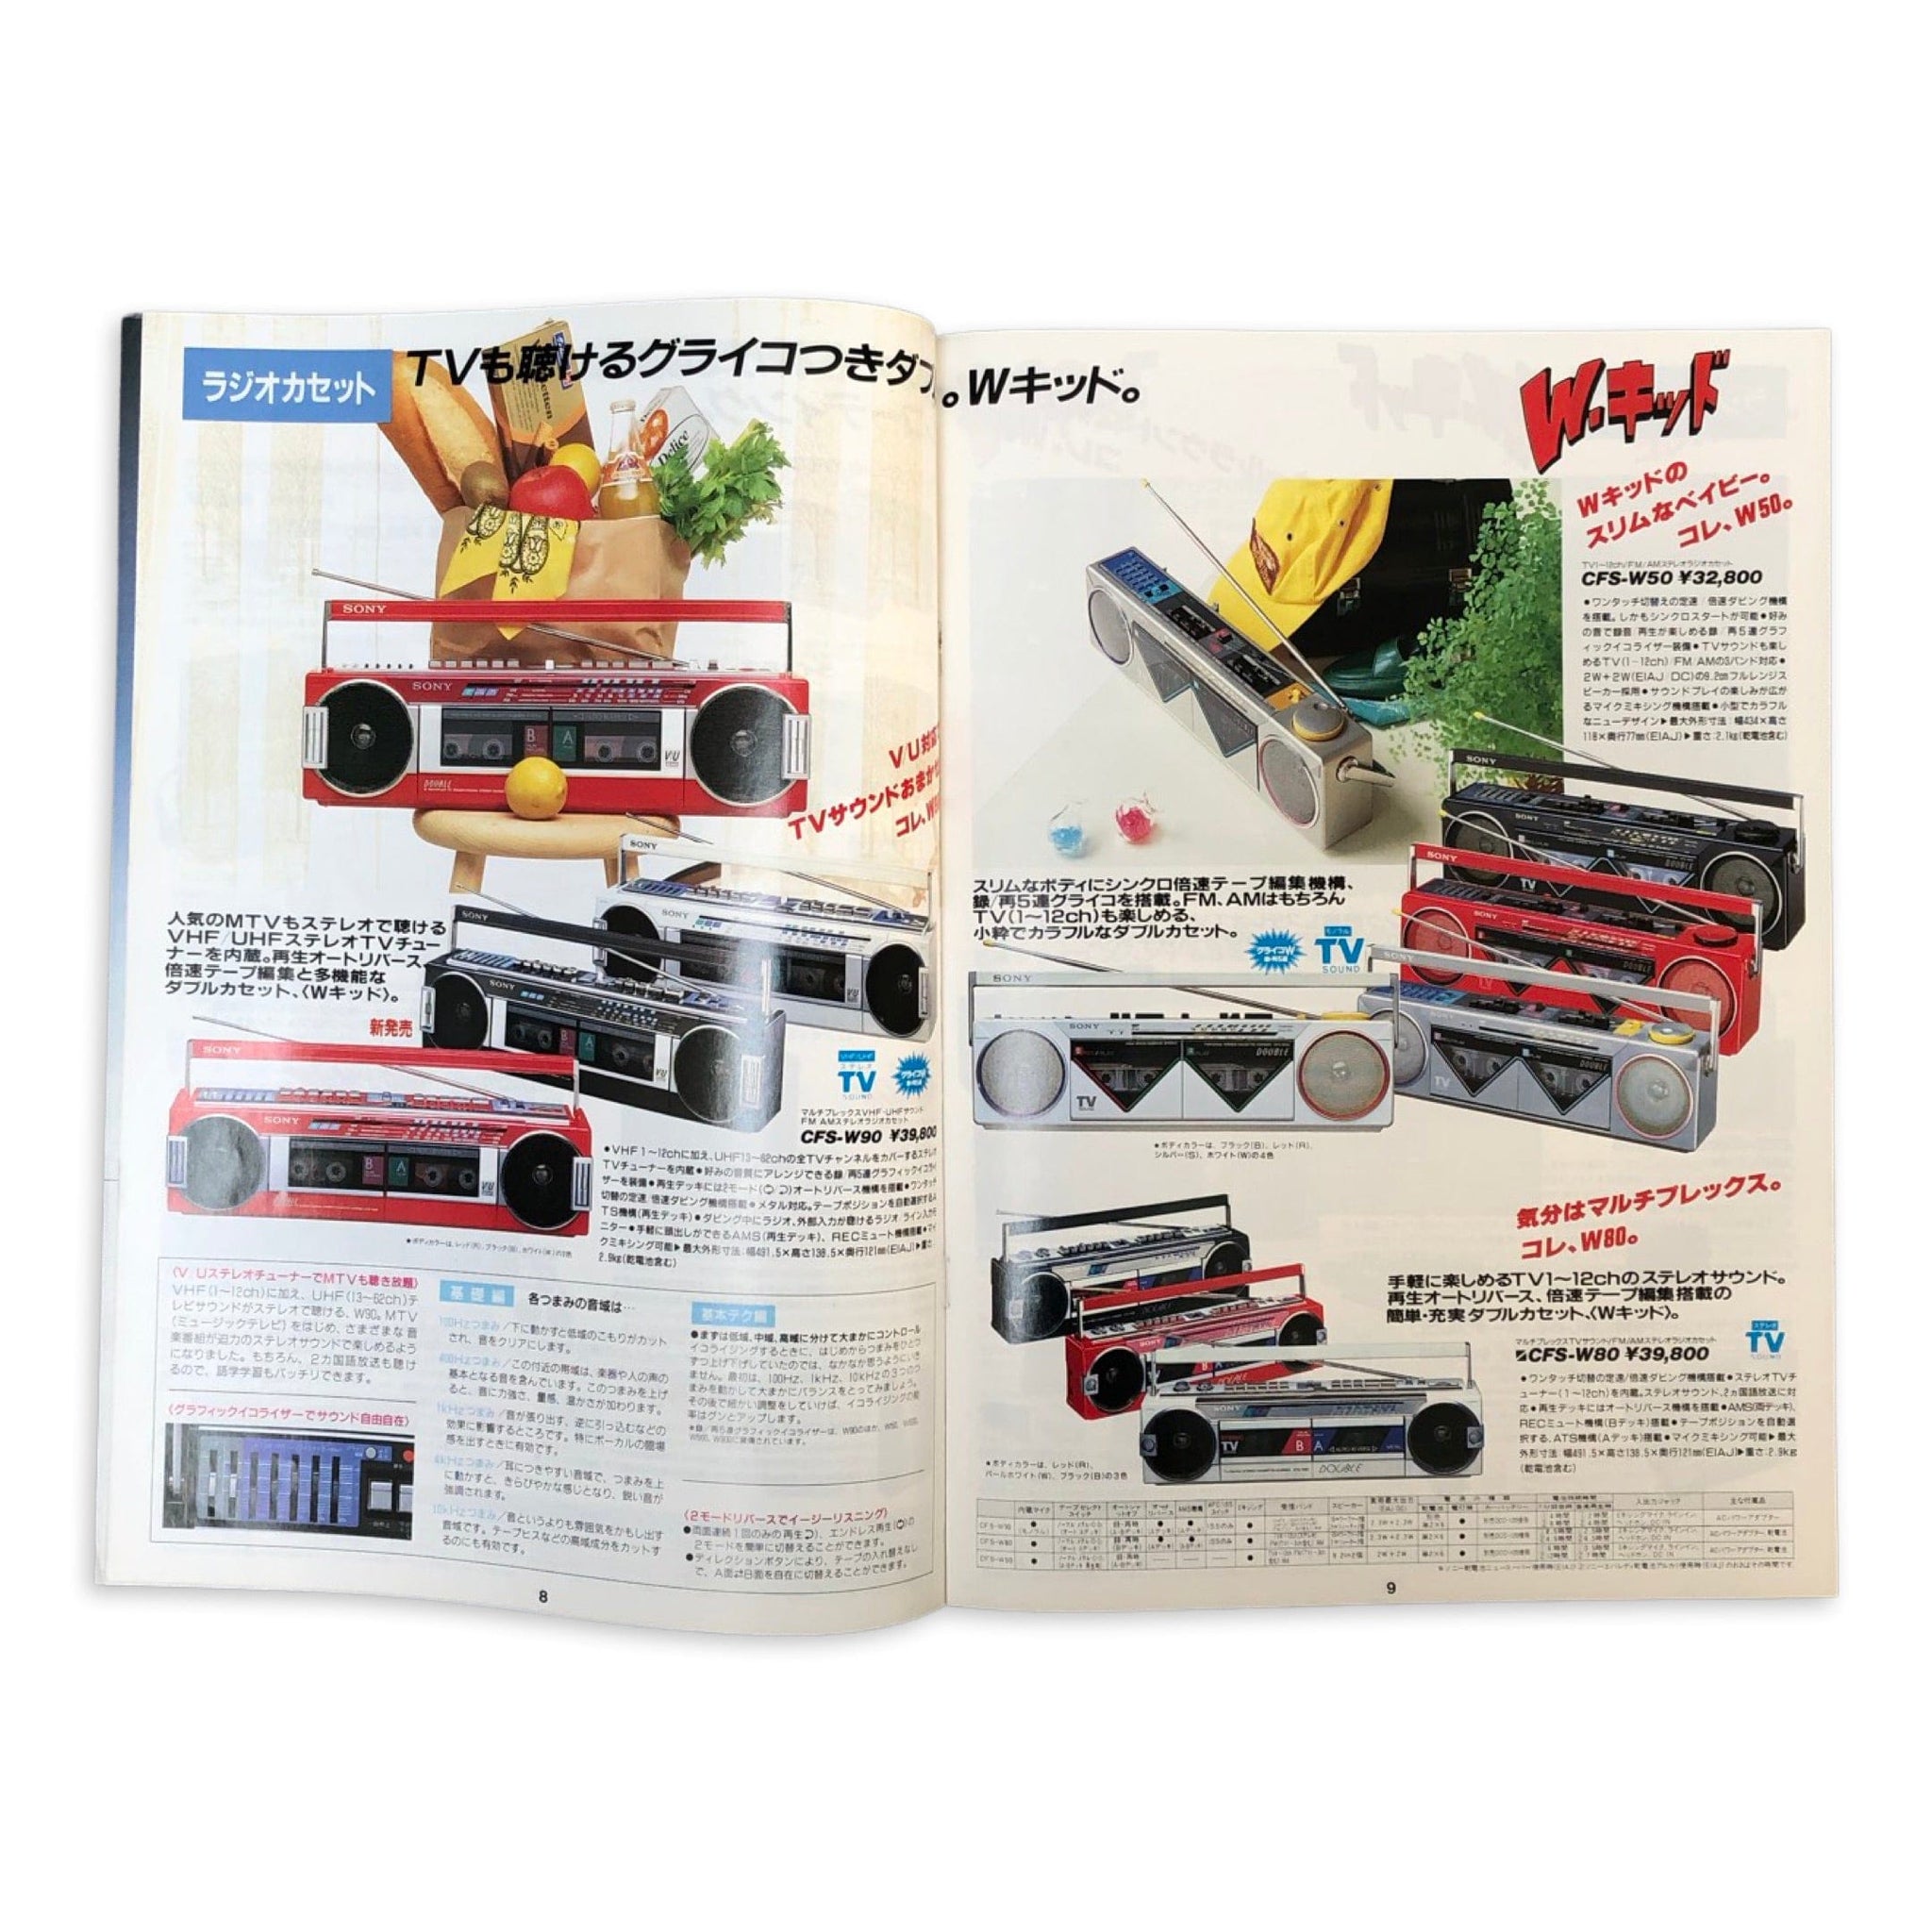 Sony Maxell Denon Japan 1985 Catalogue